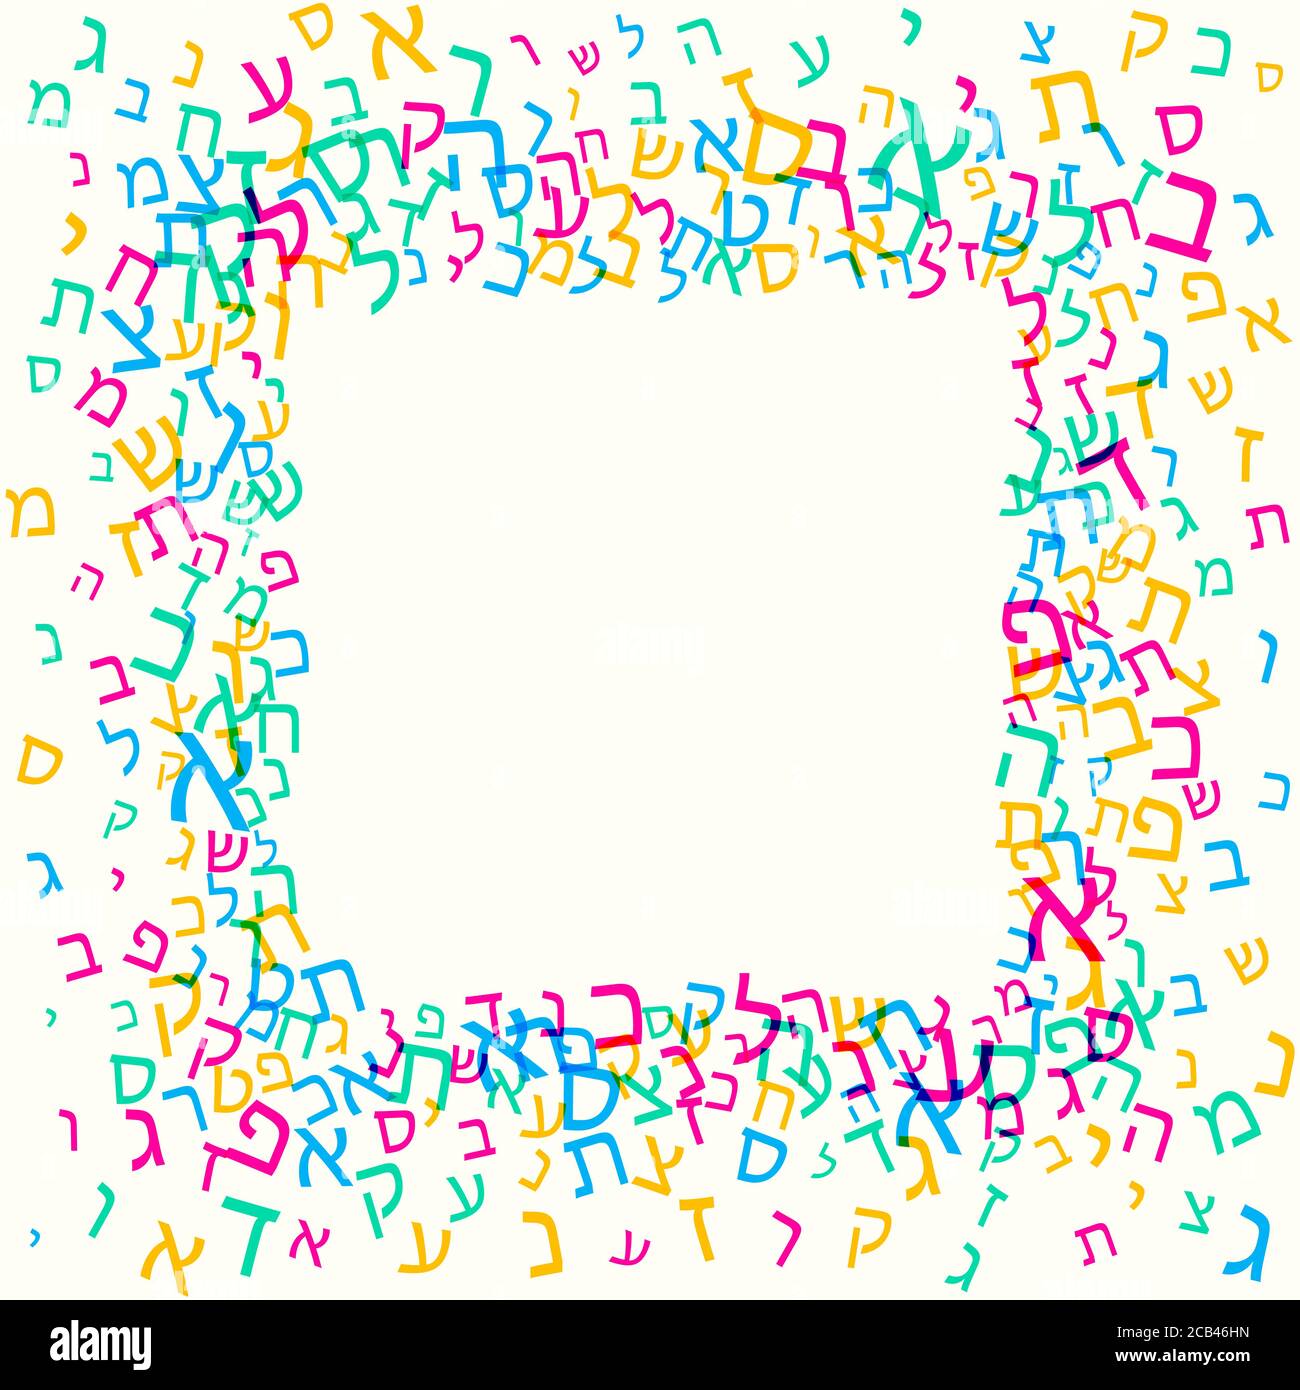 Tutte le lettere dell'alfabeto ebraico, sfondo ebreo ABC. Nube di parole ebraiche. Cornice composta da caratteri font. Illustrazione vettoriale. Illustrazione Vettoriale